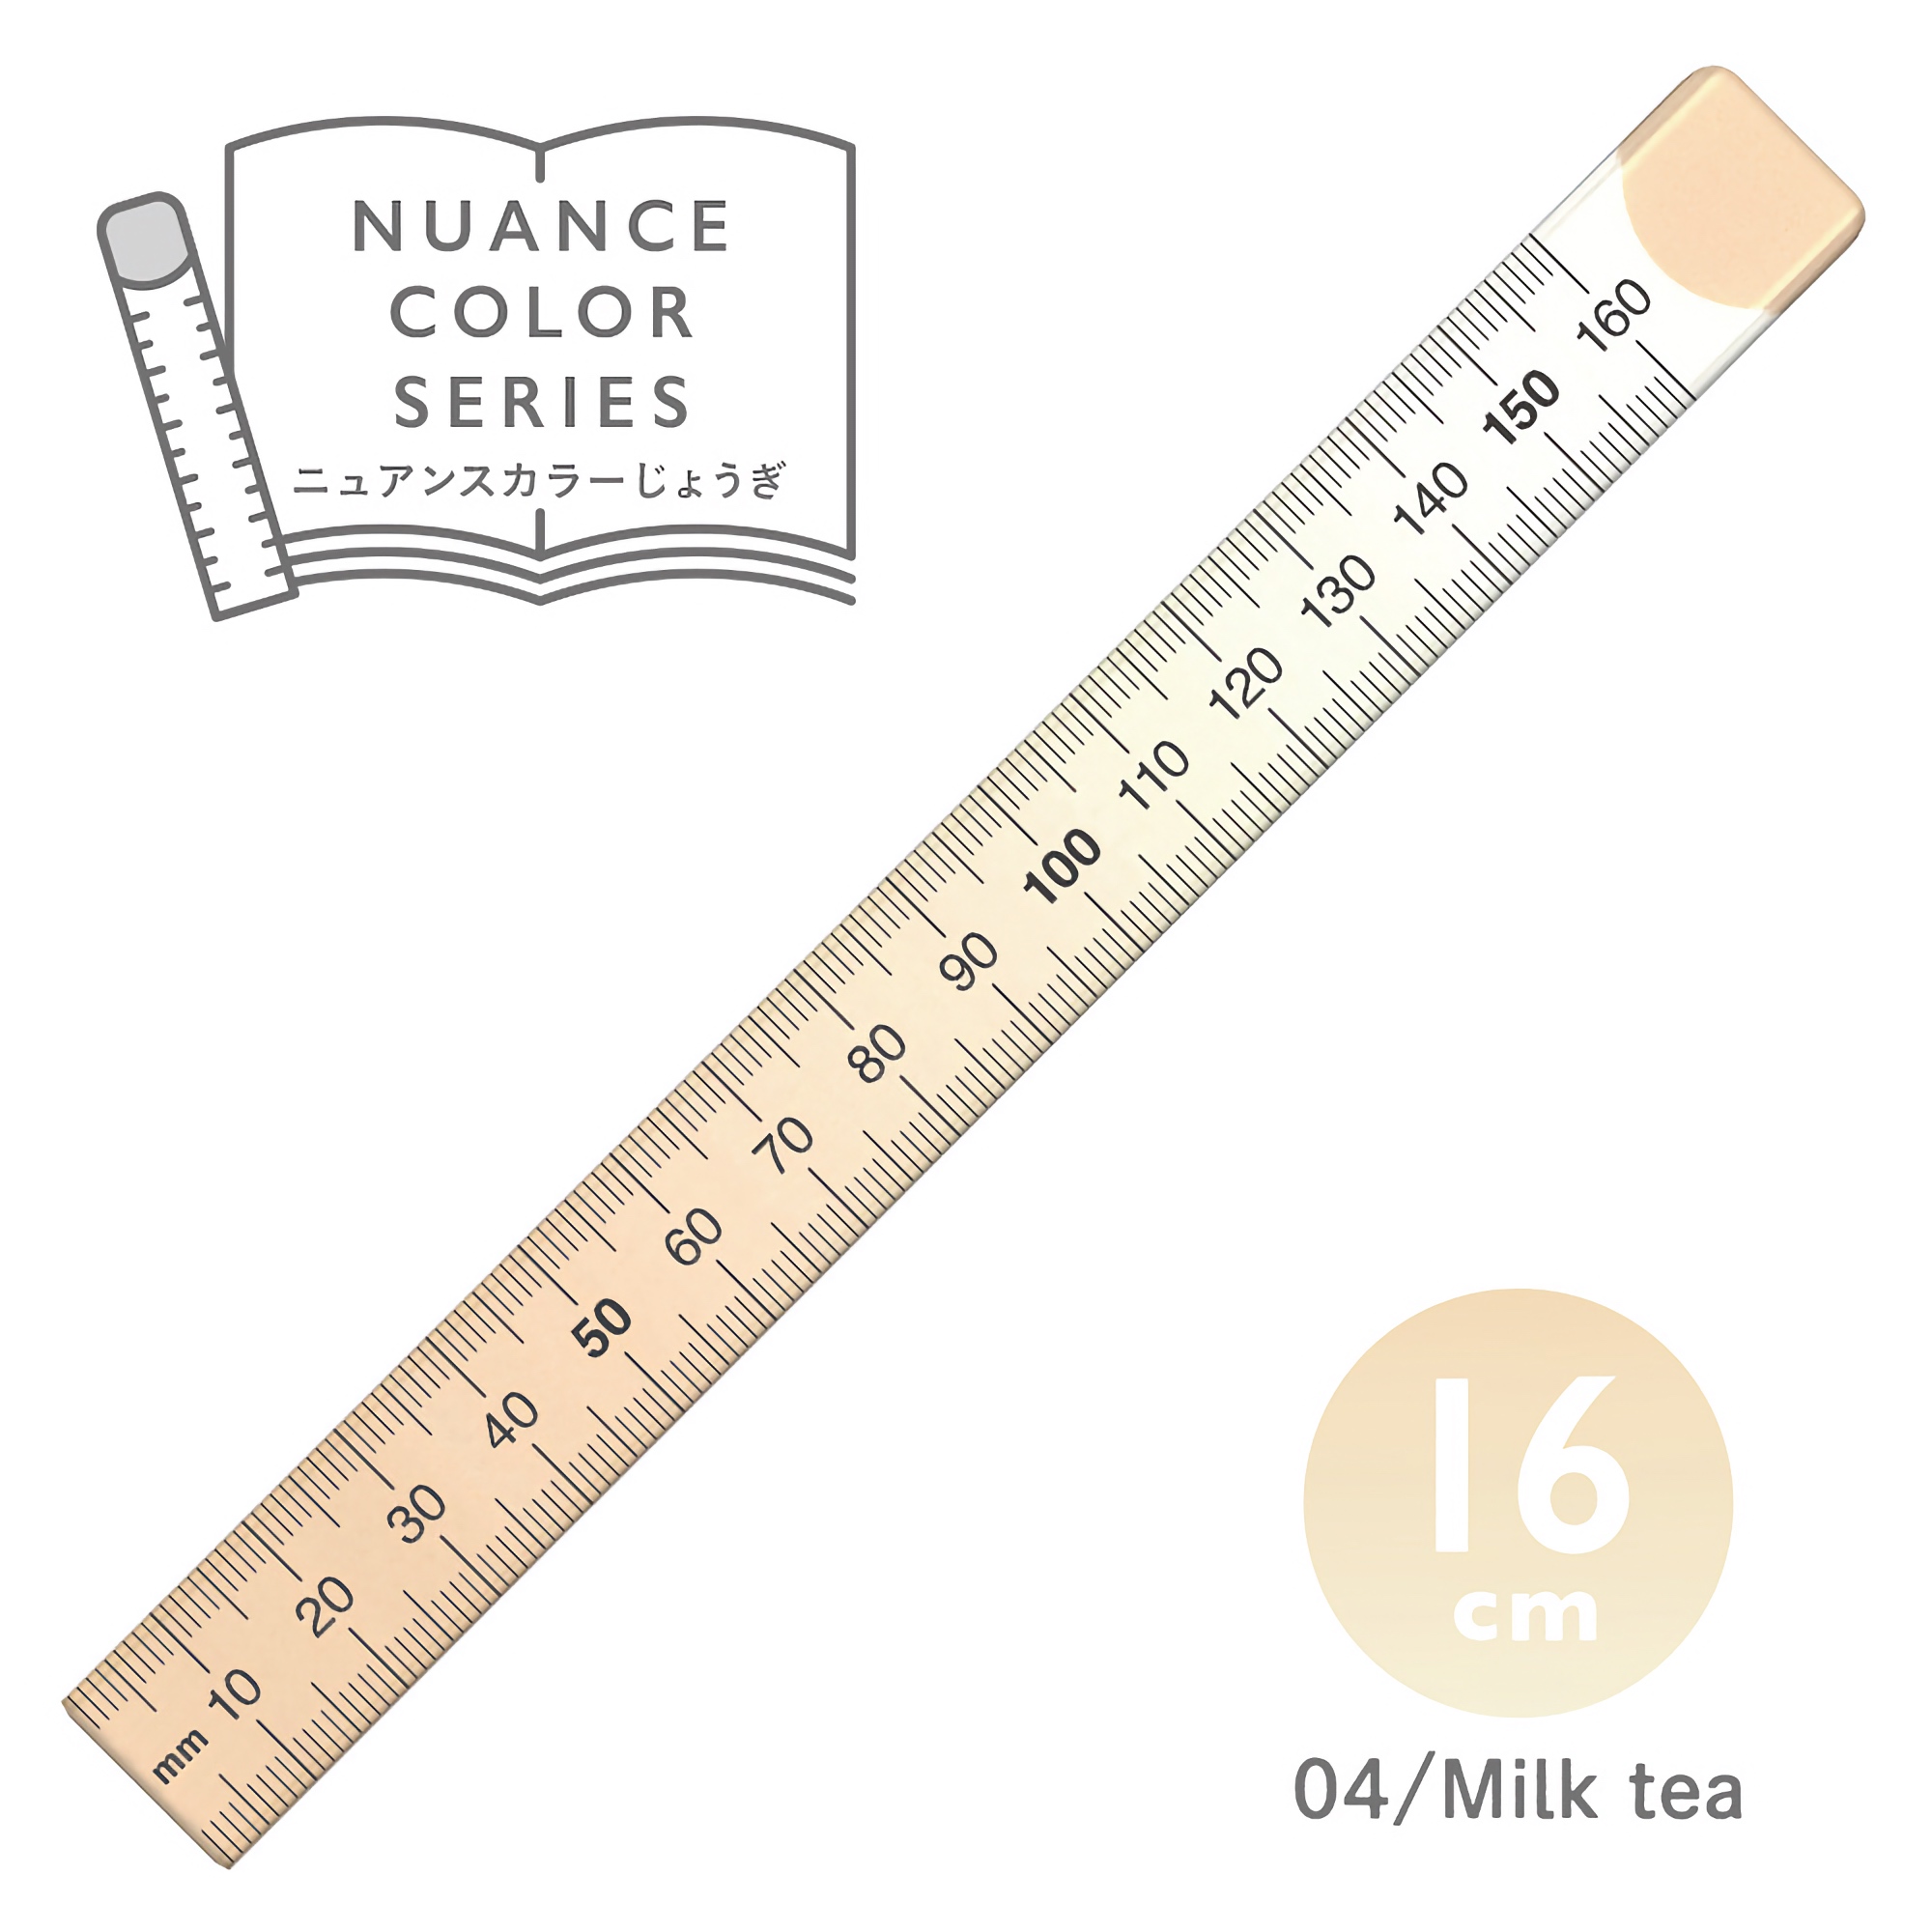 Kyoei Orions Nuance Color Ruler 16 cm Milk Tea